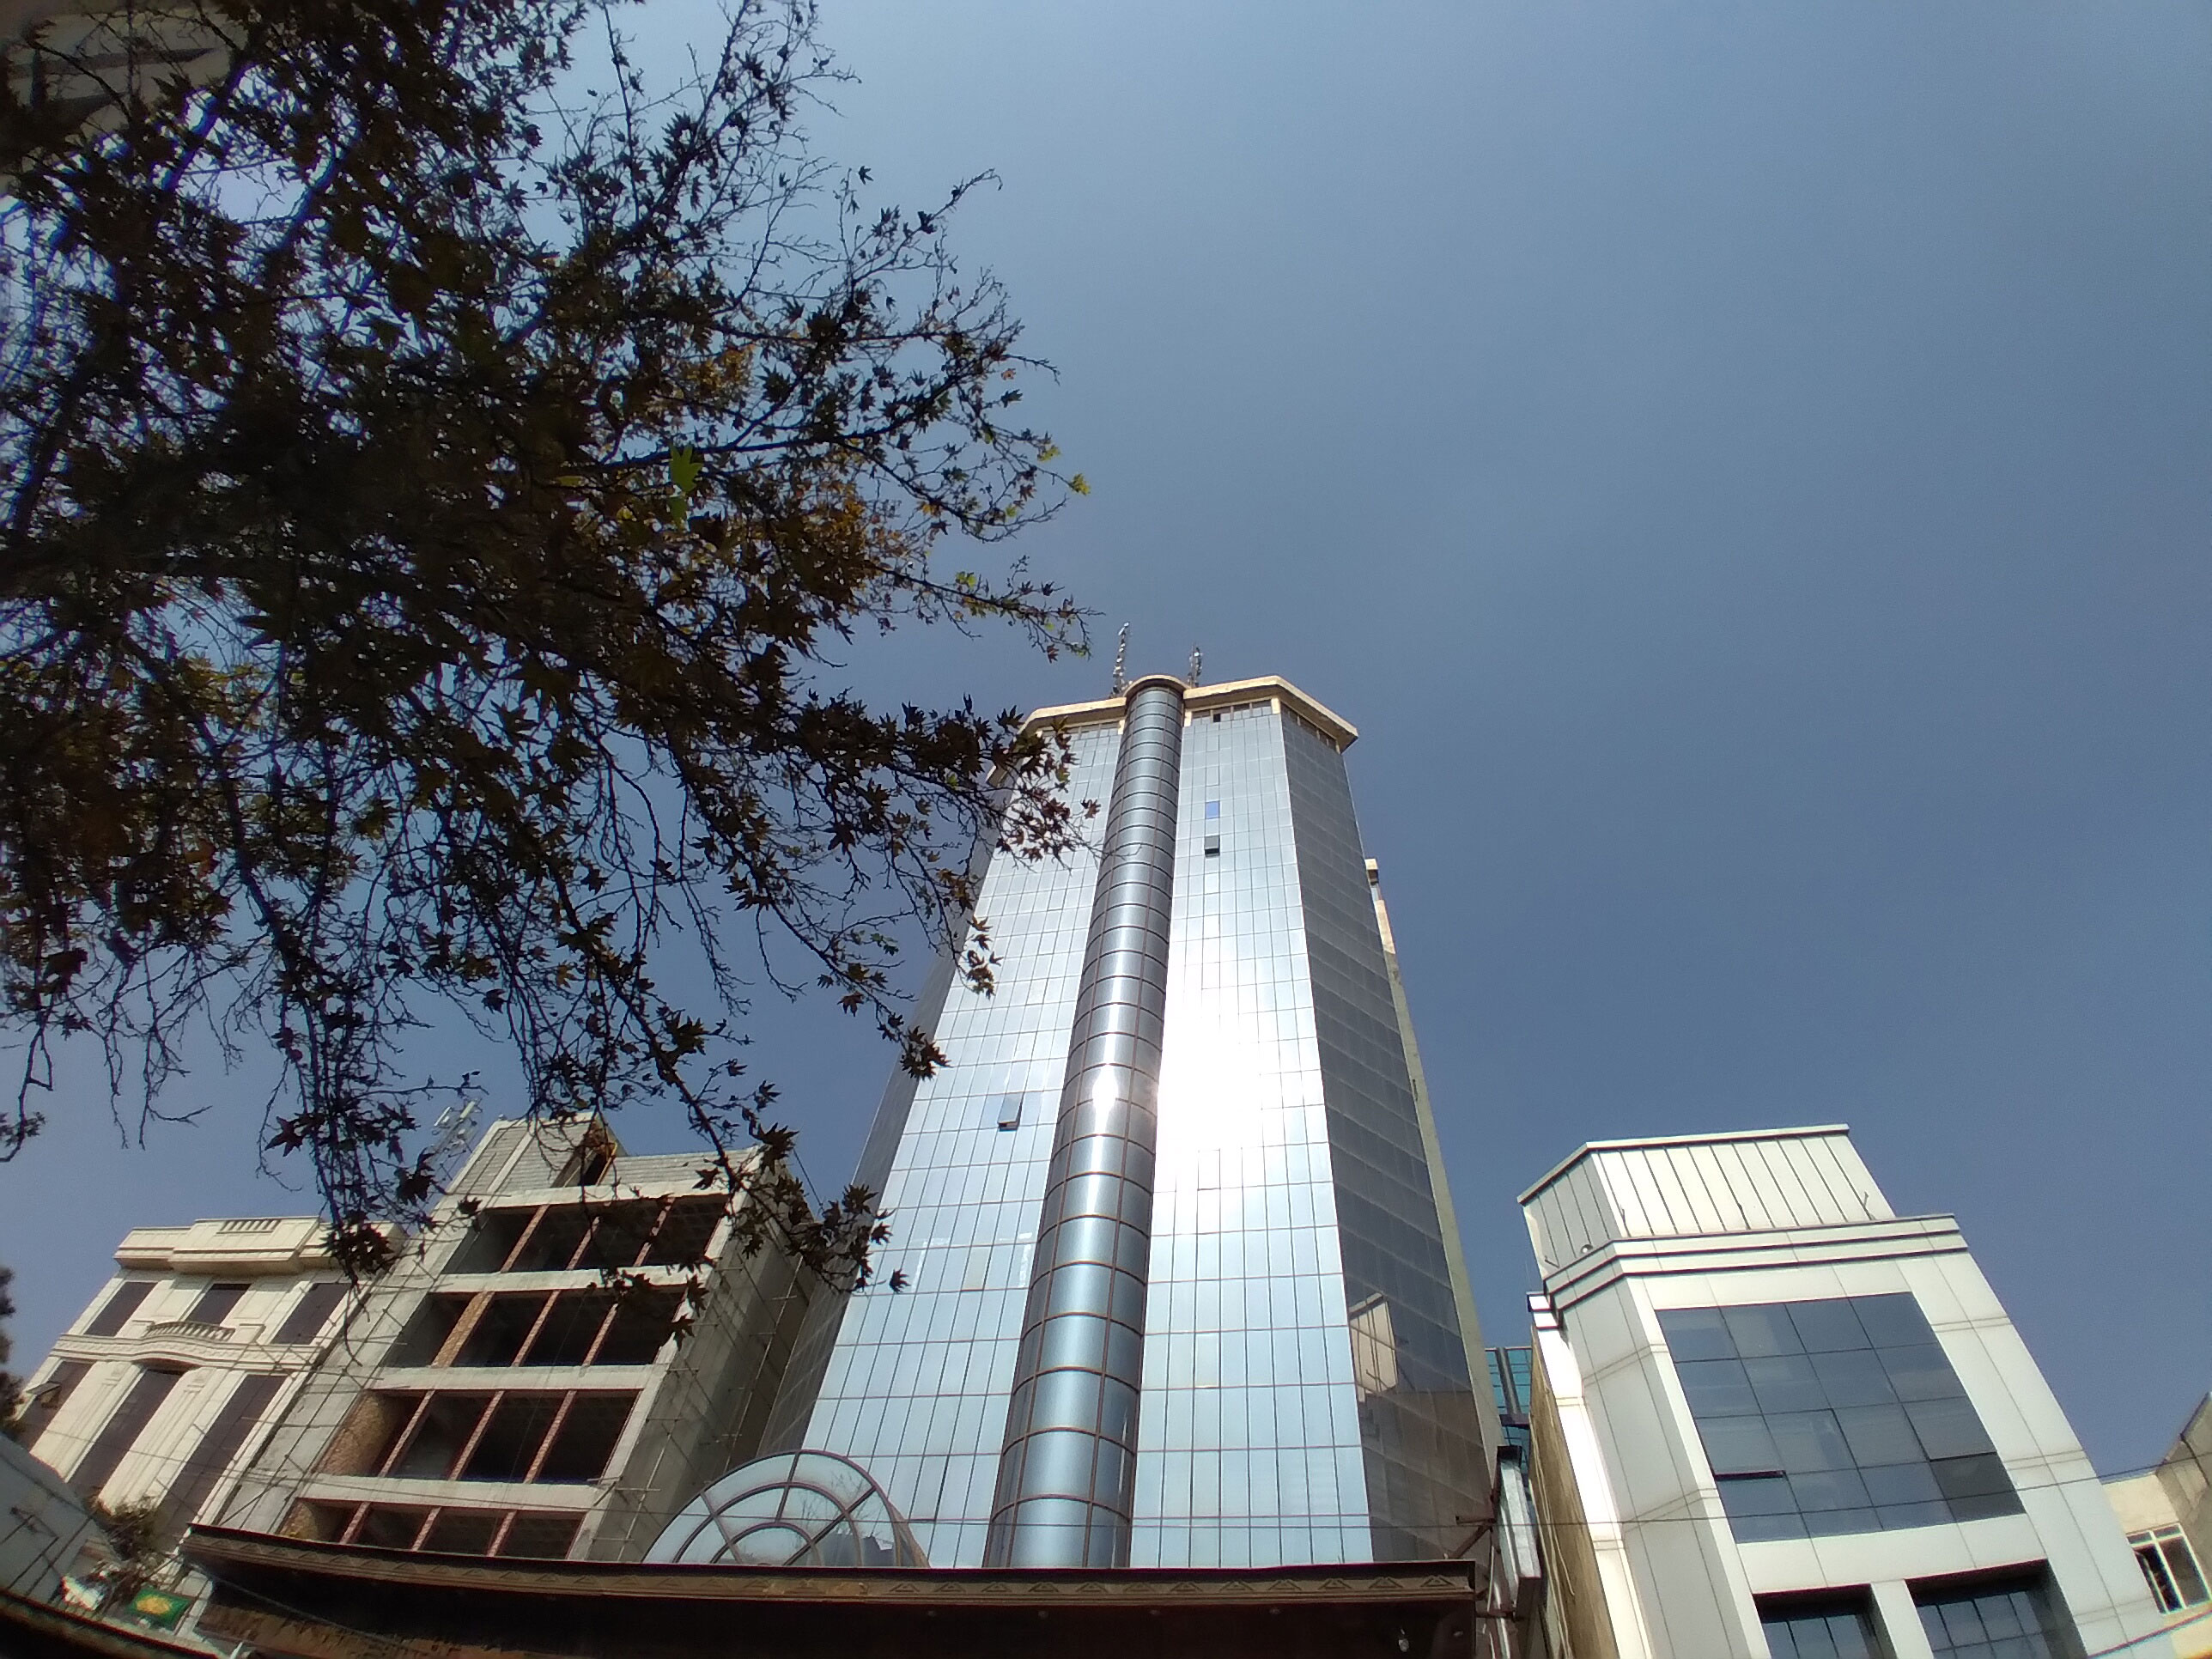 نمونه تصویر دوربین اولتراواید گلکسی A11 - نمای برج شیشه ای در روز